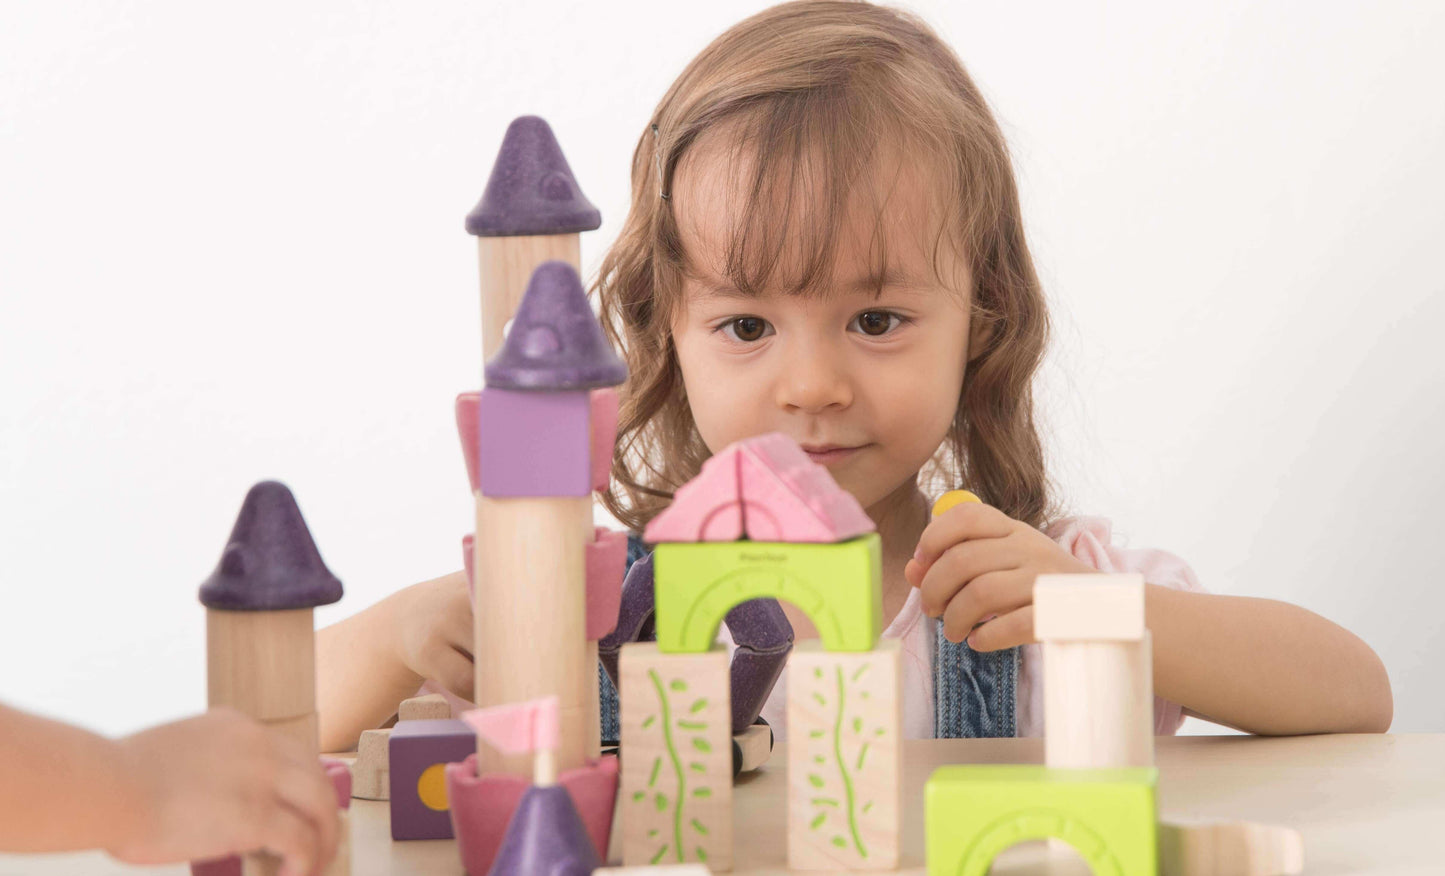 Fairy Tale Blocks, PlanToys, eco-friendly Toys, Mountain Kids Toys